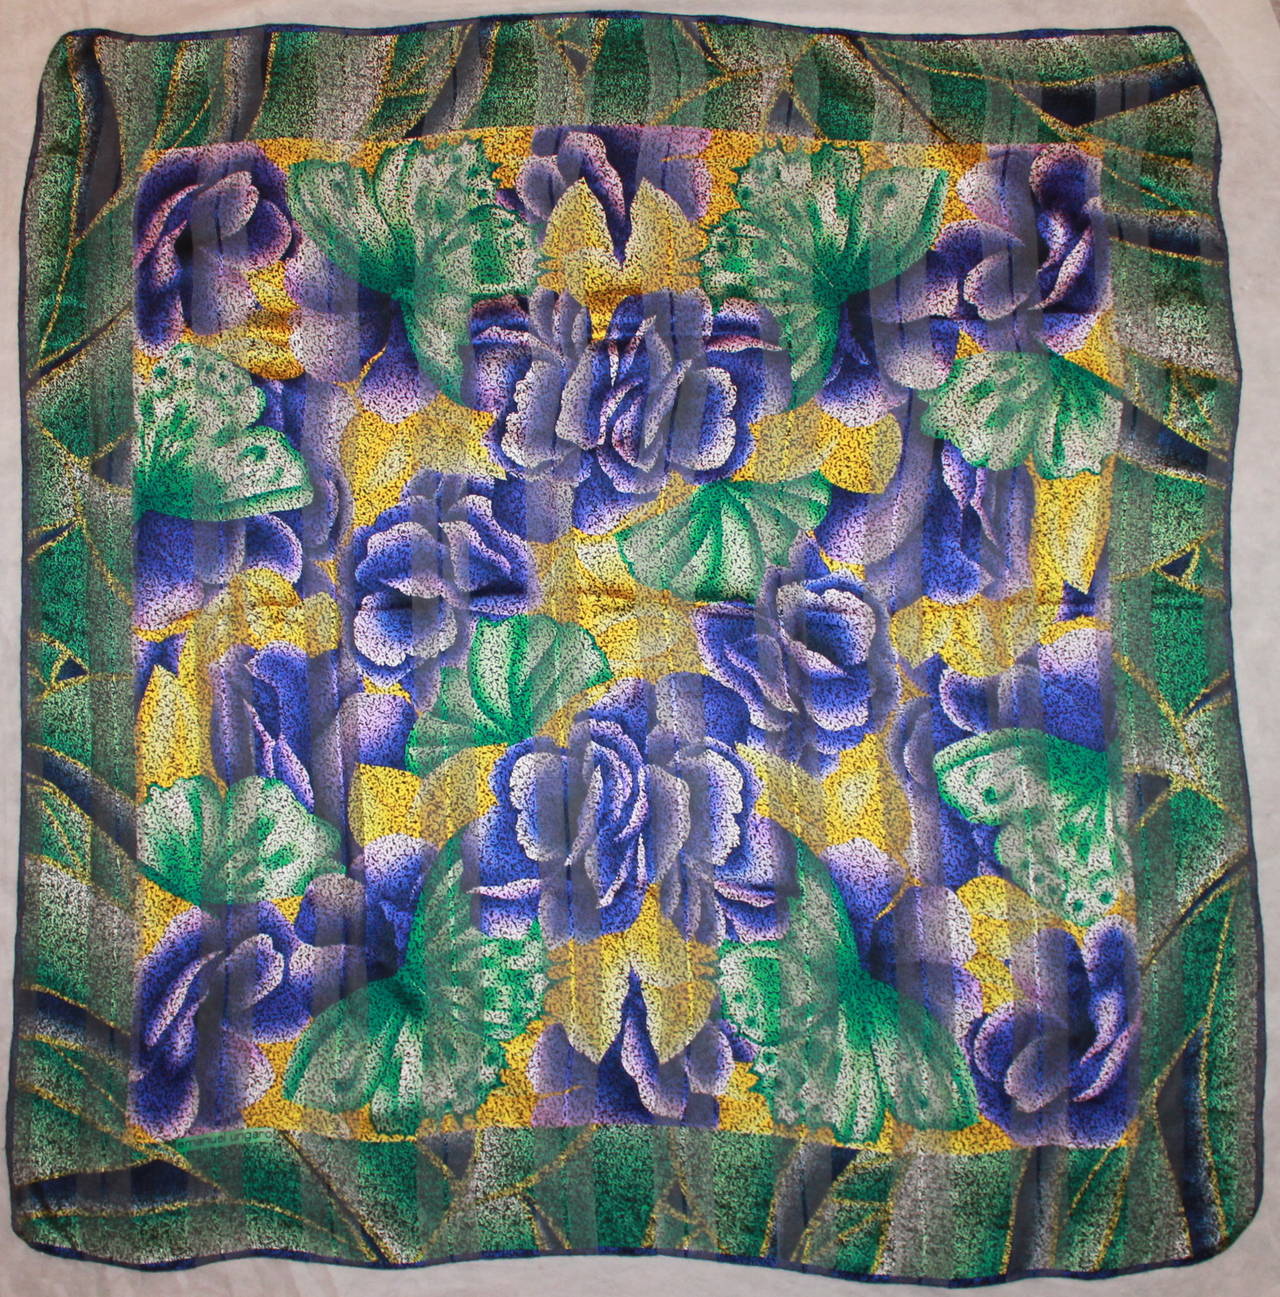 Emanuel Ungaro Grüner, violetter und gelber Seidenschal mit Blumenmuster. Dieser Schal ist in ausgezeichnetem Zustand und hat lila Blumen mit grünen Blütenblättern und einem gelben Hintergrund. 

Länge- 53.75